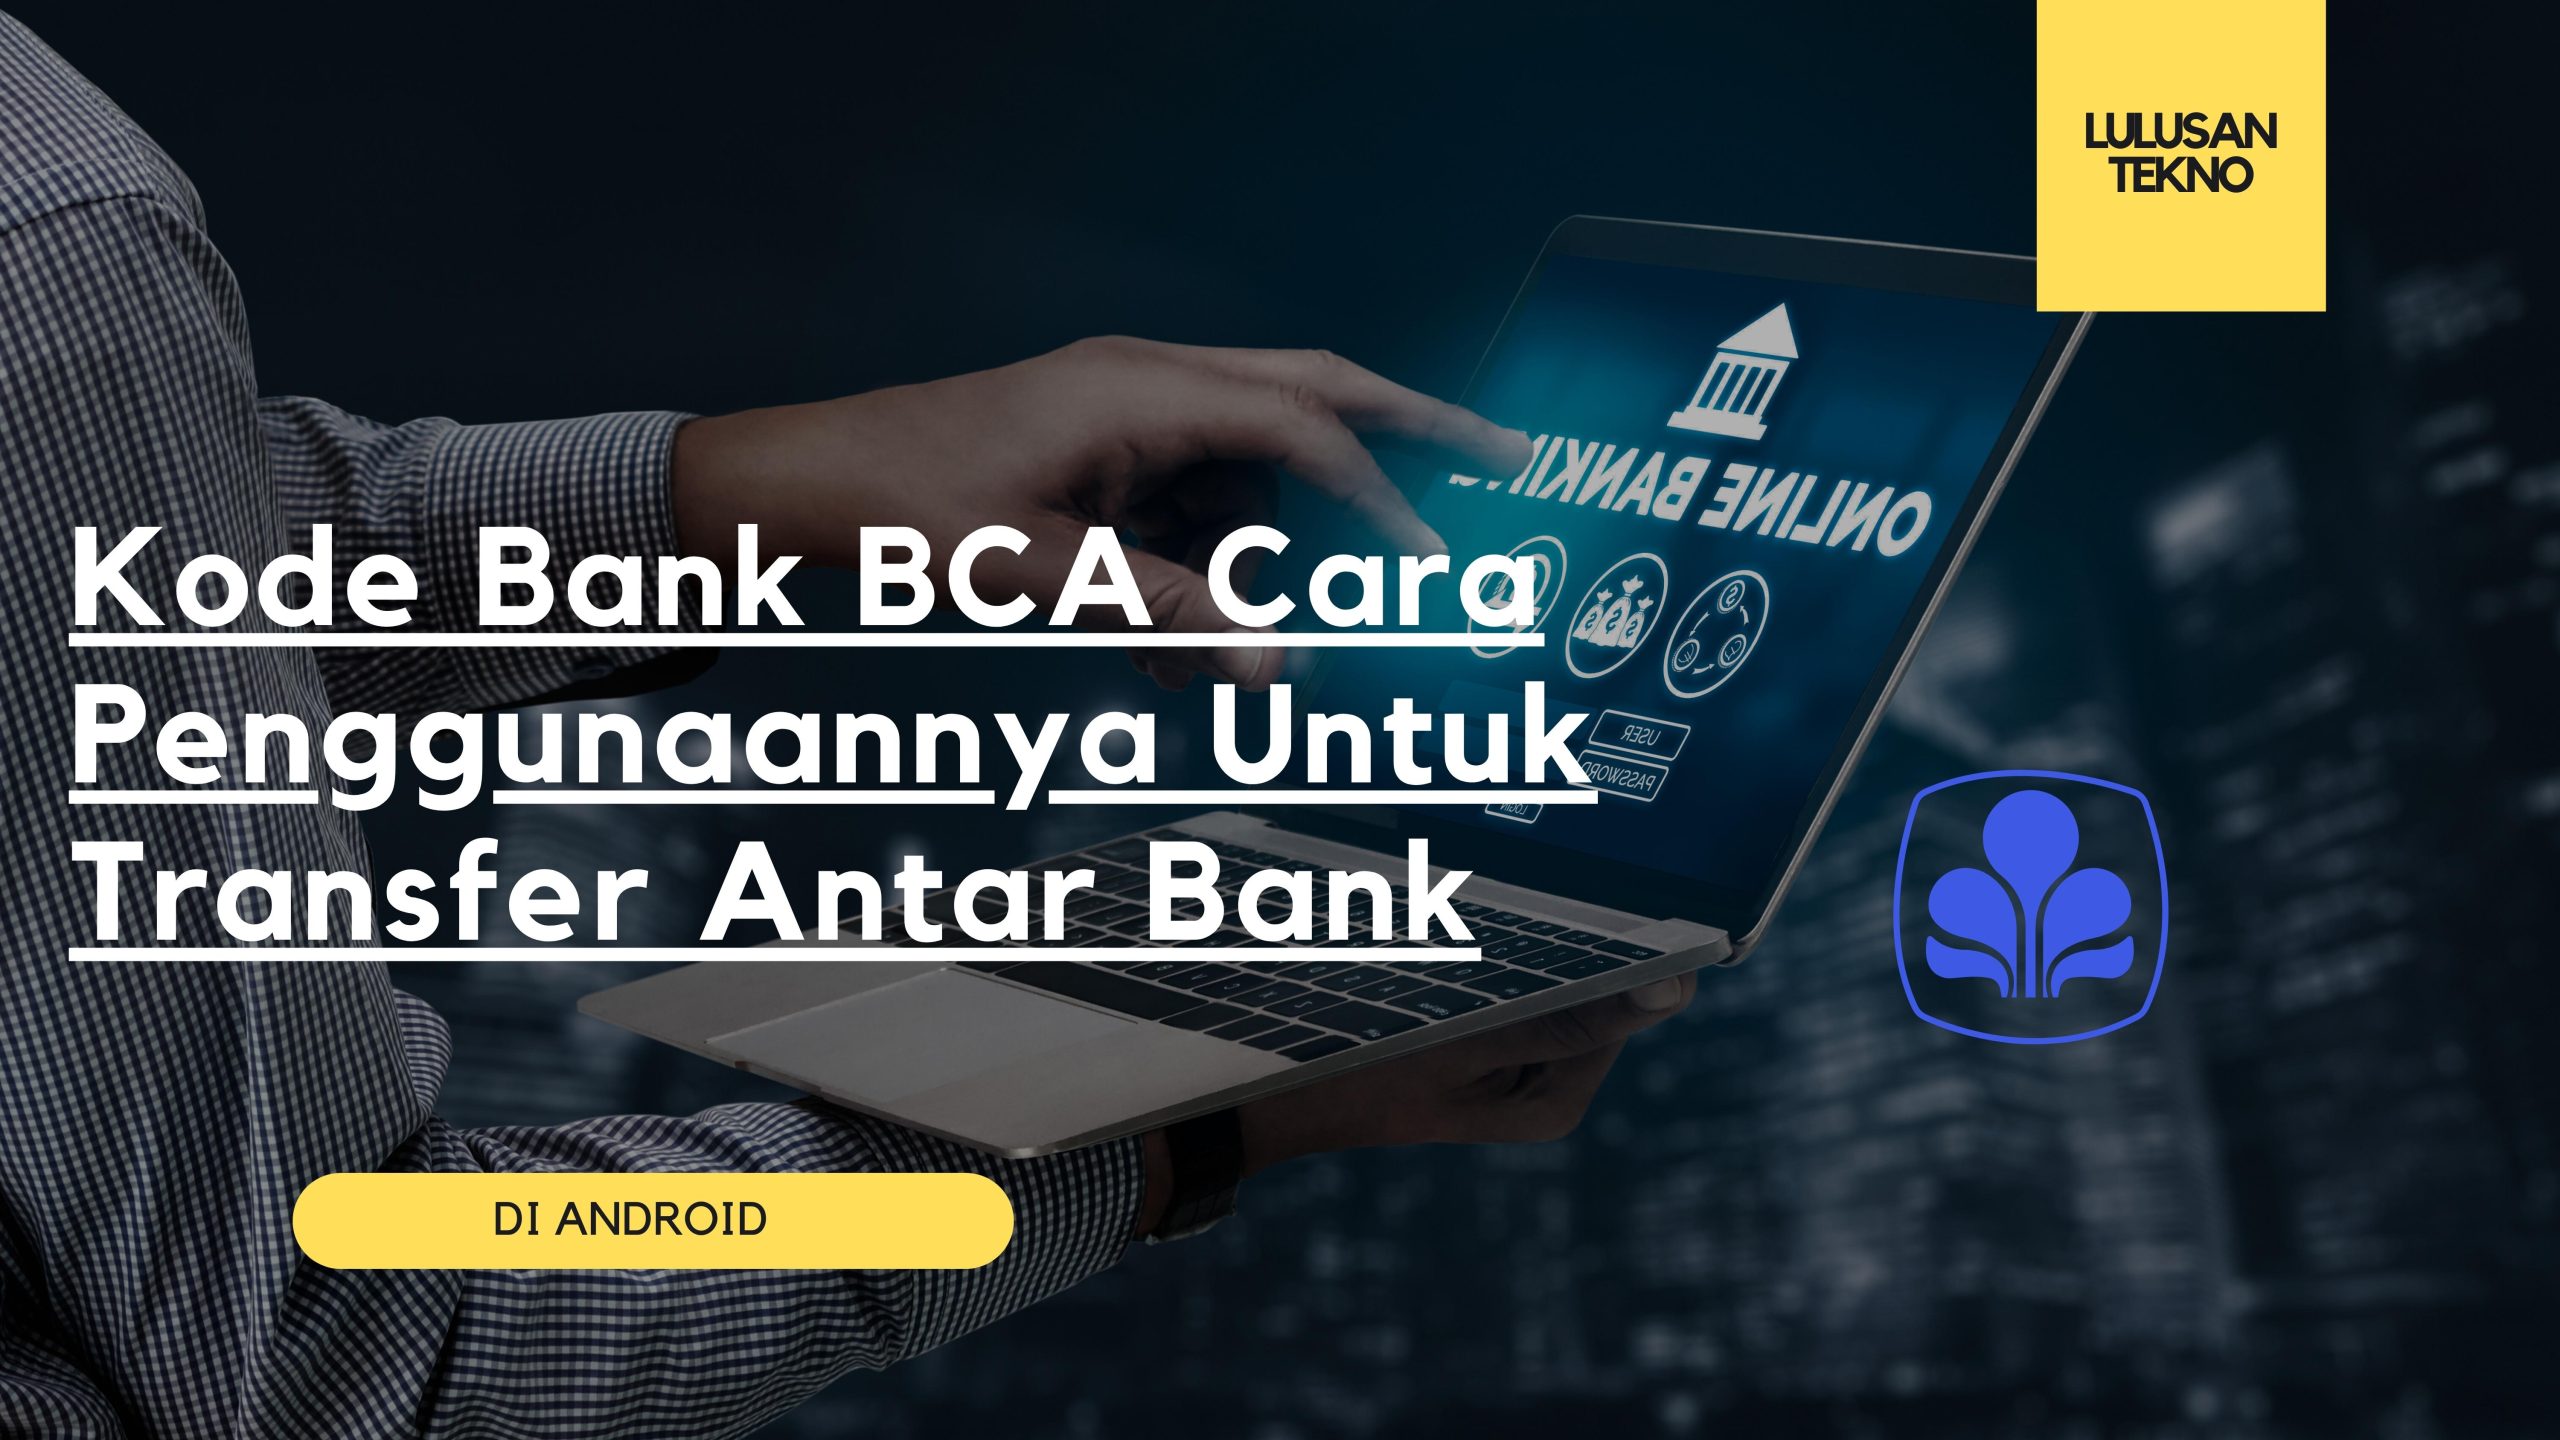 Kode Bank BCA Cara Penggunaannya Untuk Transfer Antar Bank